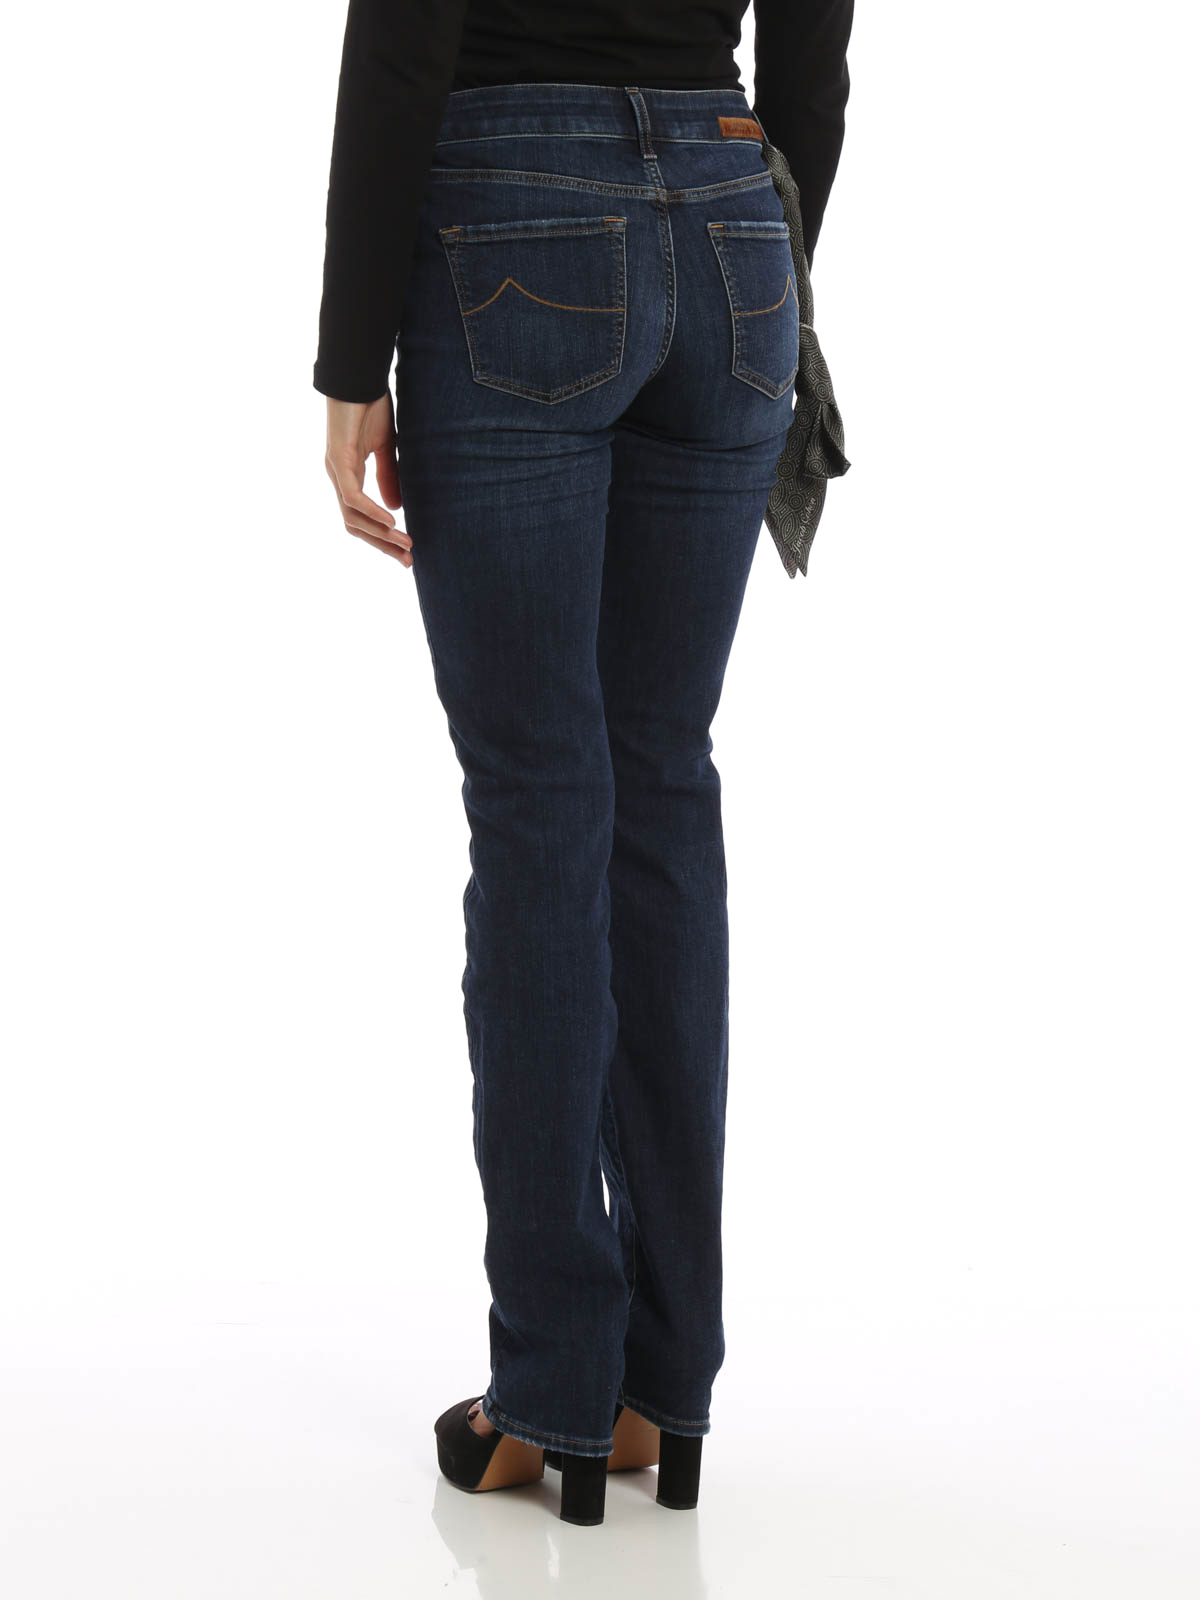 petticoat Monarchie Volharding Skinny jeans Jacob Cohen - Jocelyn luxury jeans - JOCELYN225W44655004